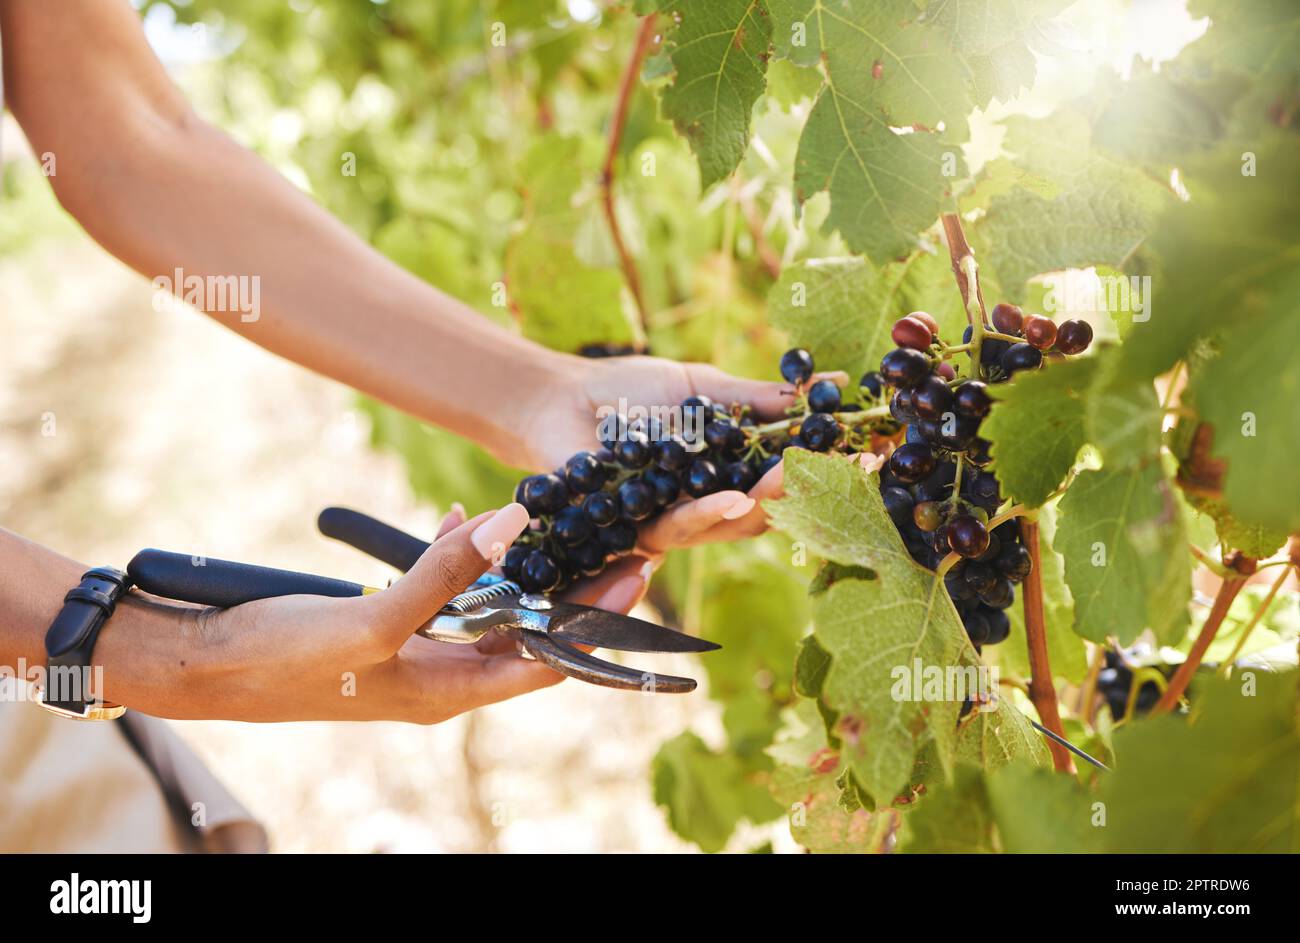 Hand, Landwirt und Erntearbeiter von Händen arbeiten mit Trauben für Wein auf einem Weinberg Bauernhof im Sommer. Natur, Gesundheit und Obst in der Landwirtschaft Wachstum von Stockfoto